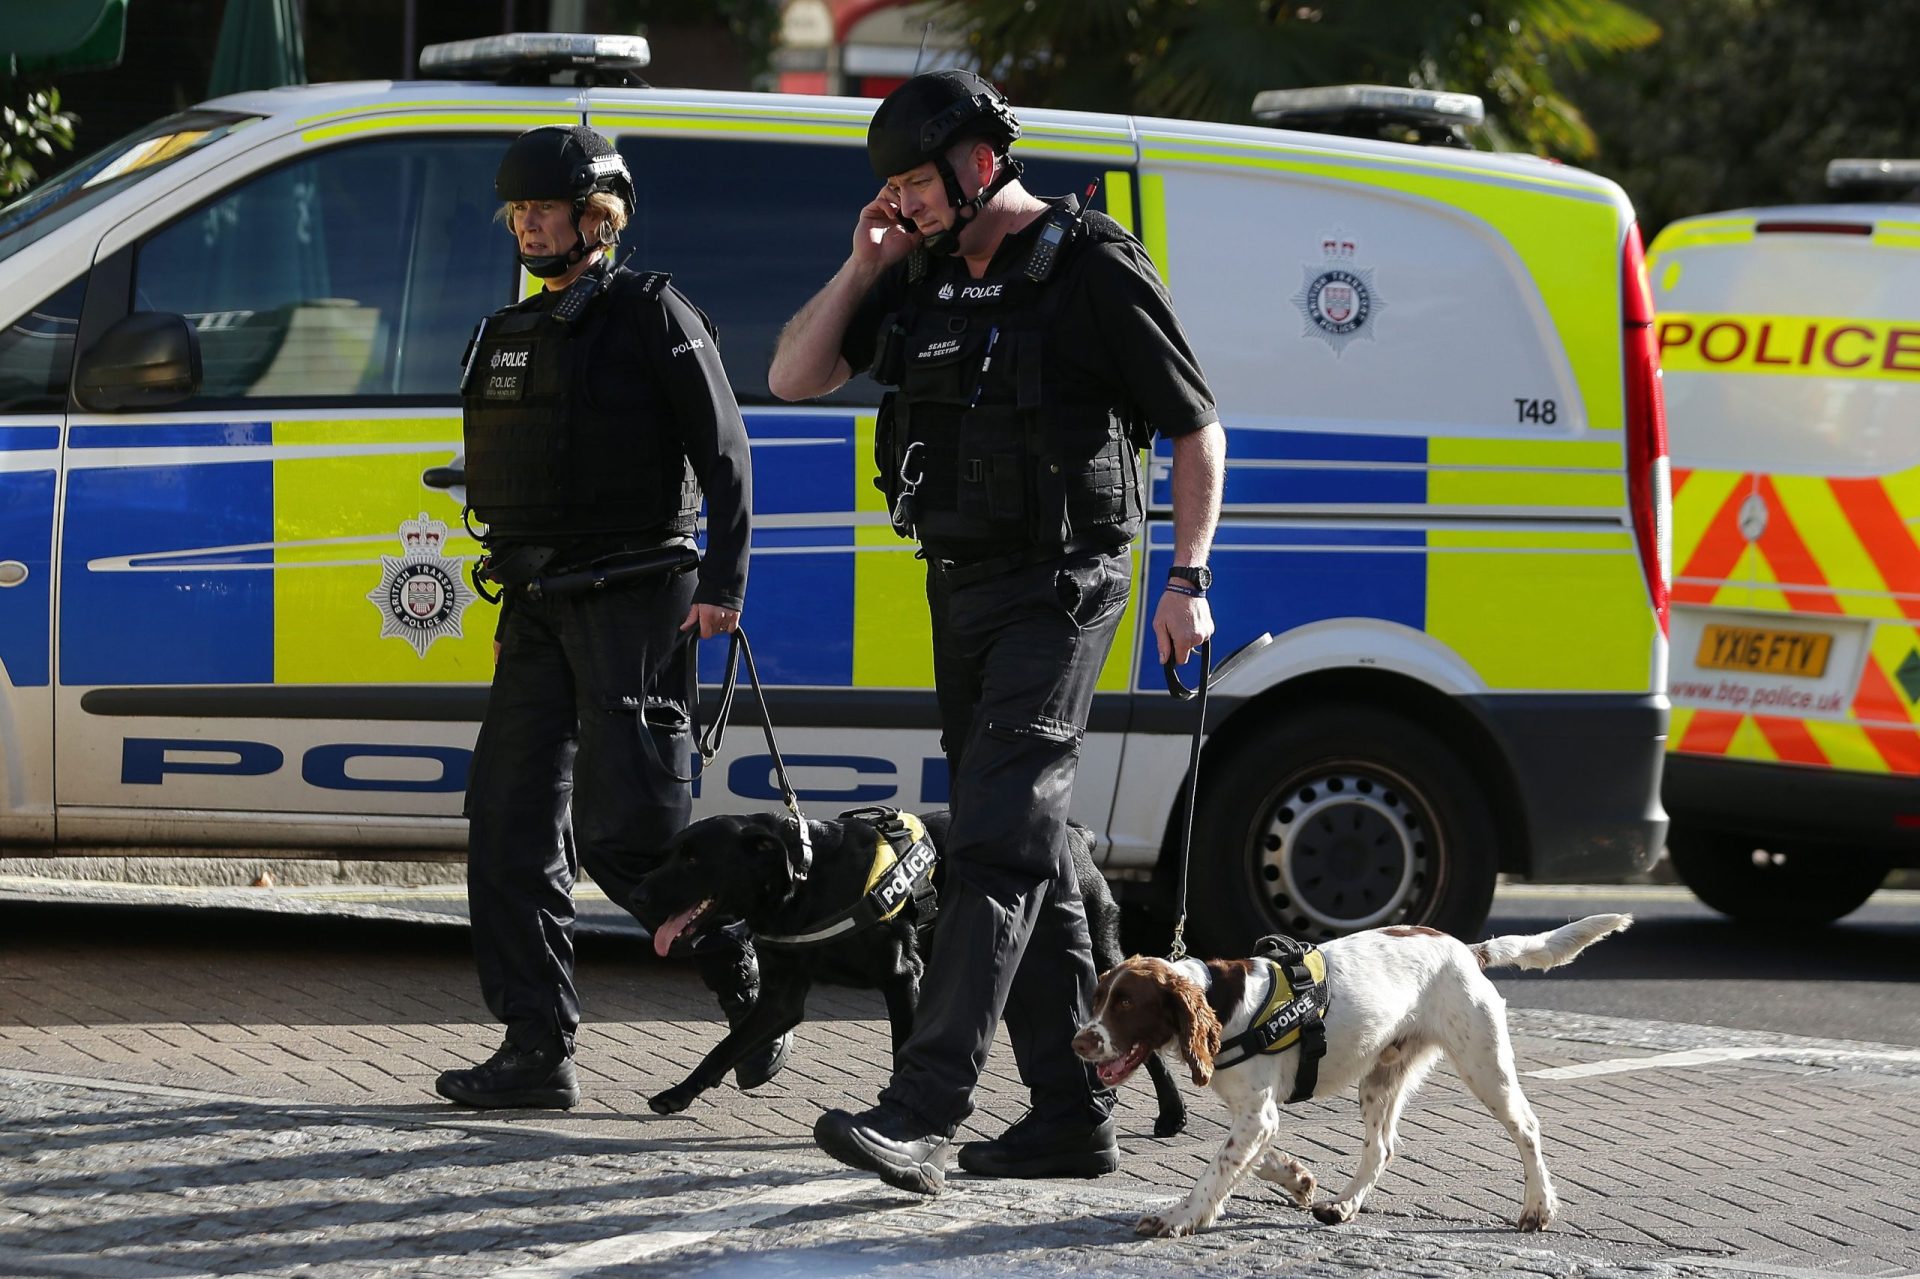 Identificado suspeito de envolvimento no ataque em Londres